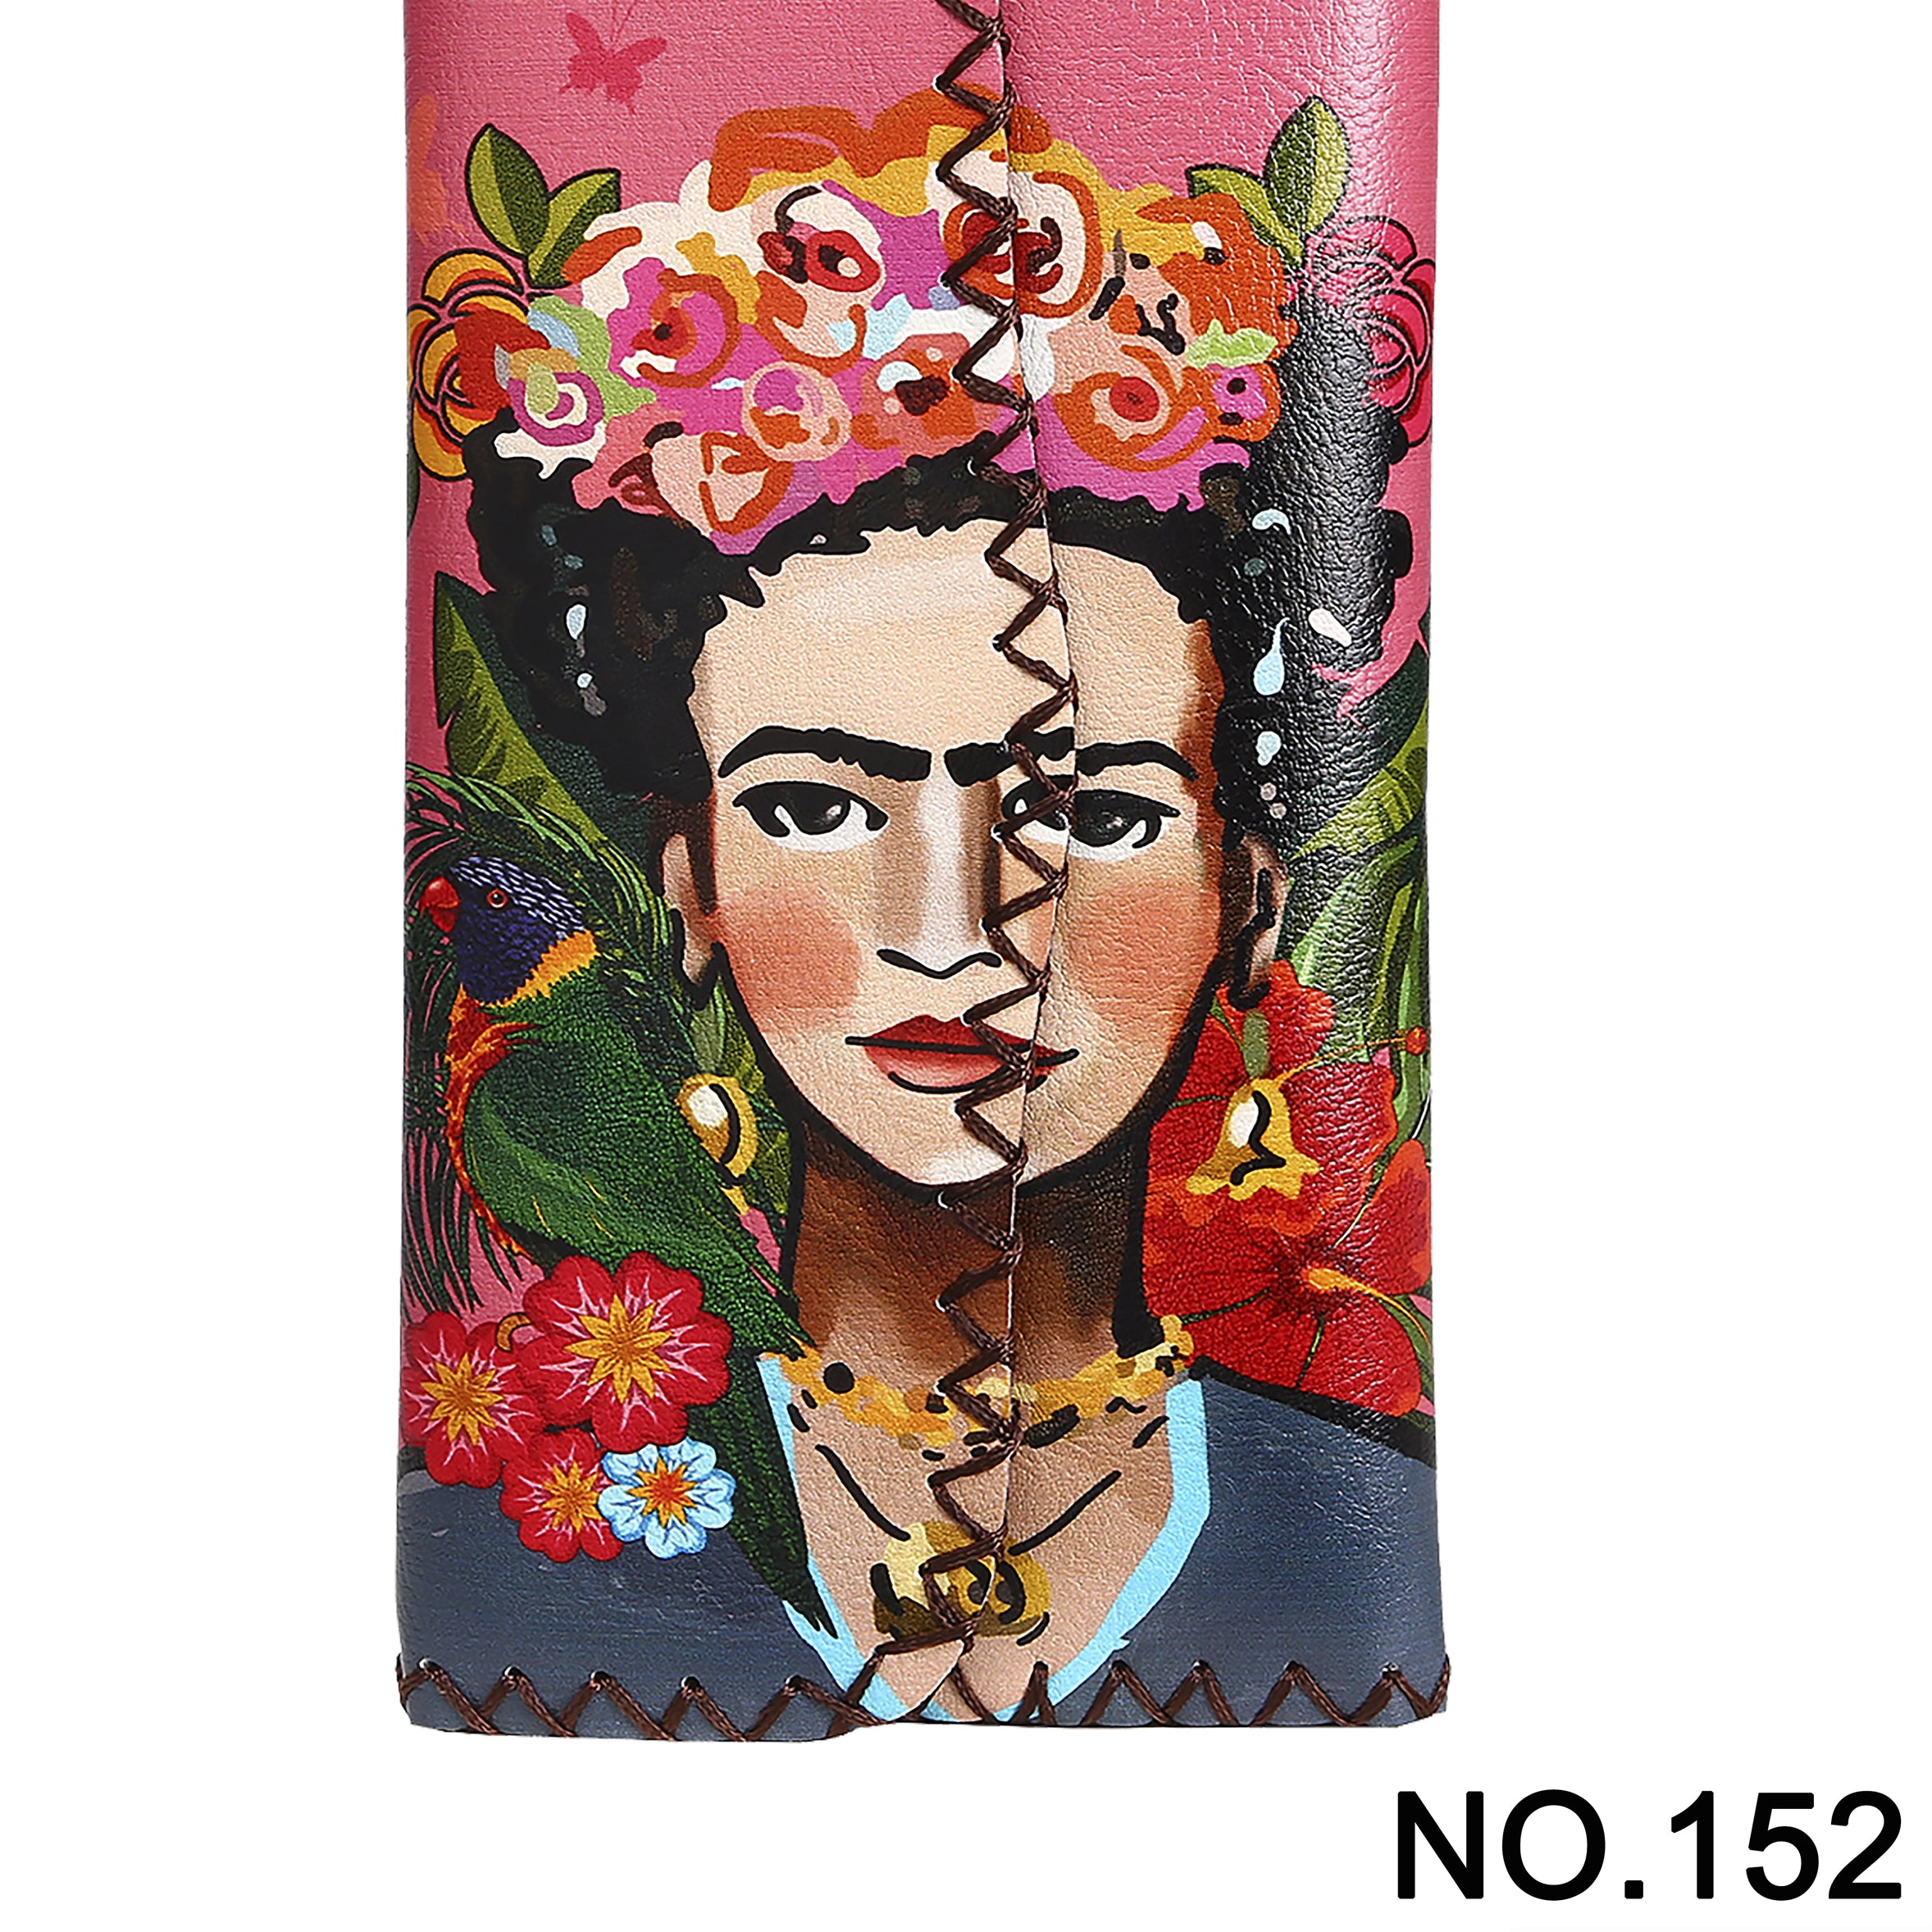 Frida Printed Wallet HB0582 - NO.152